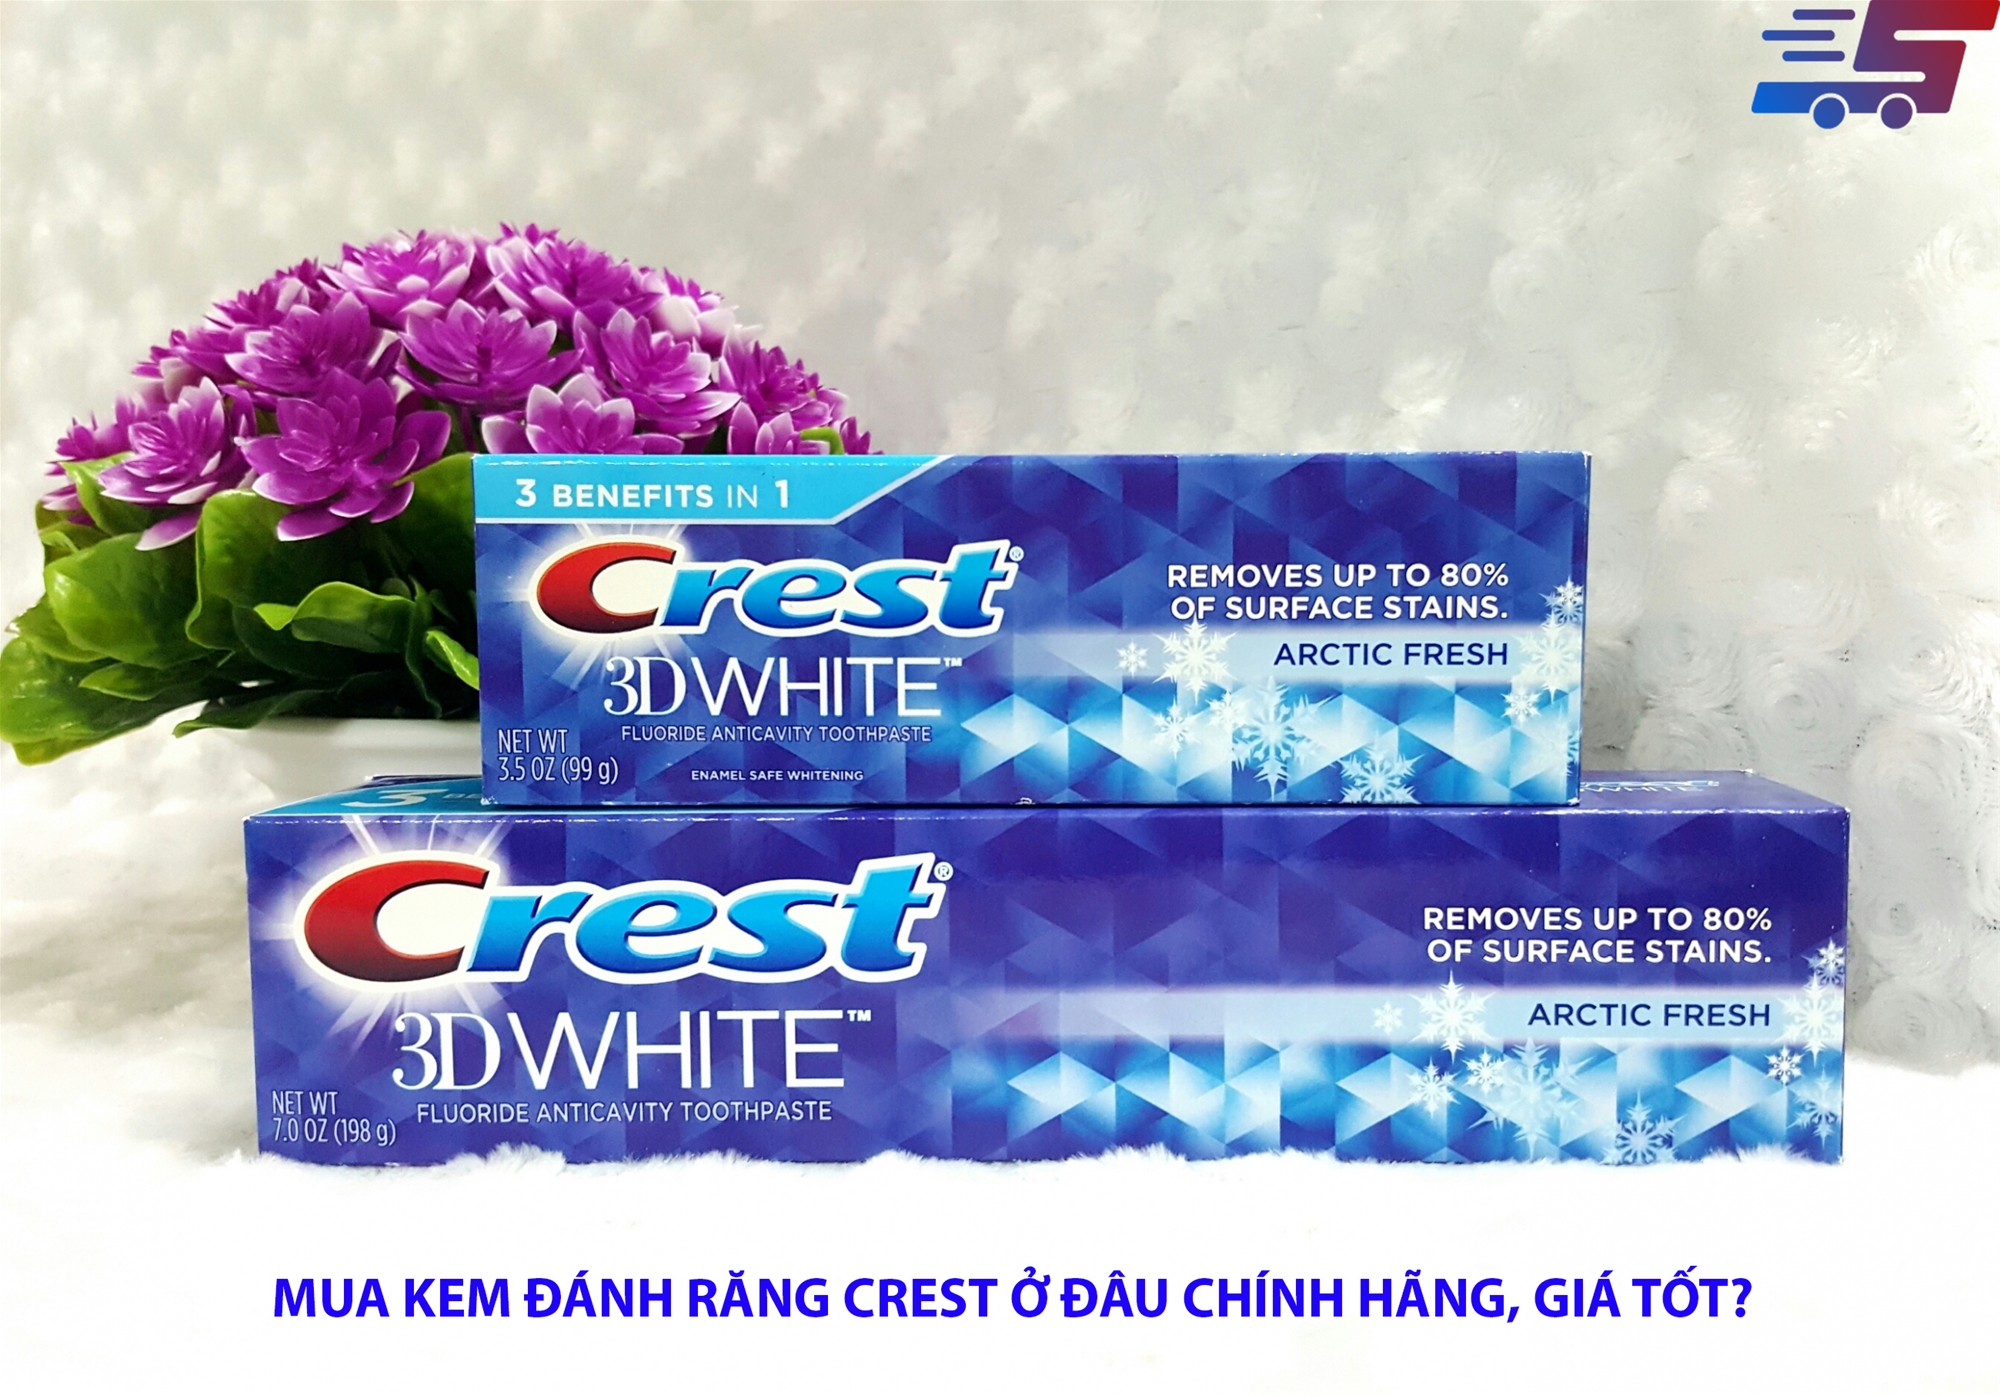 Kem đánh răng Crest mua ở đâu đảm bảo chính hãng?